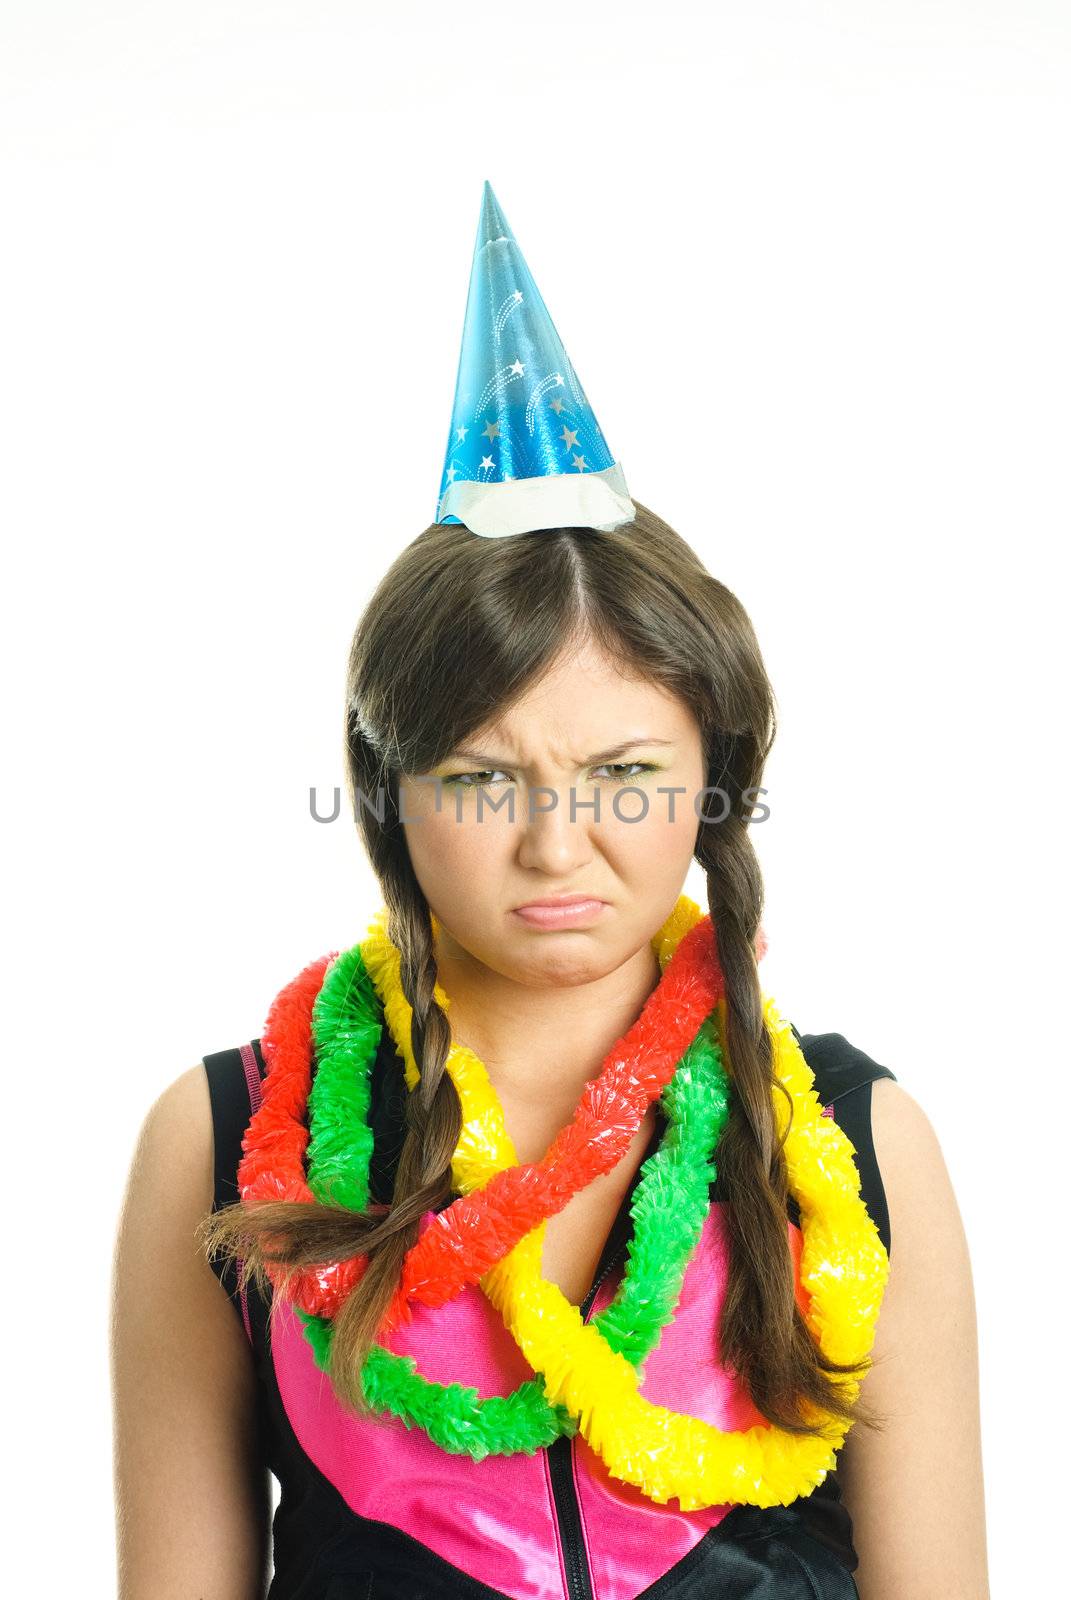 unhappy girl celebrating birthday by lanak